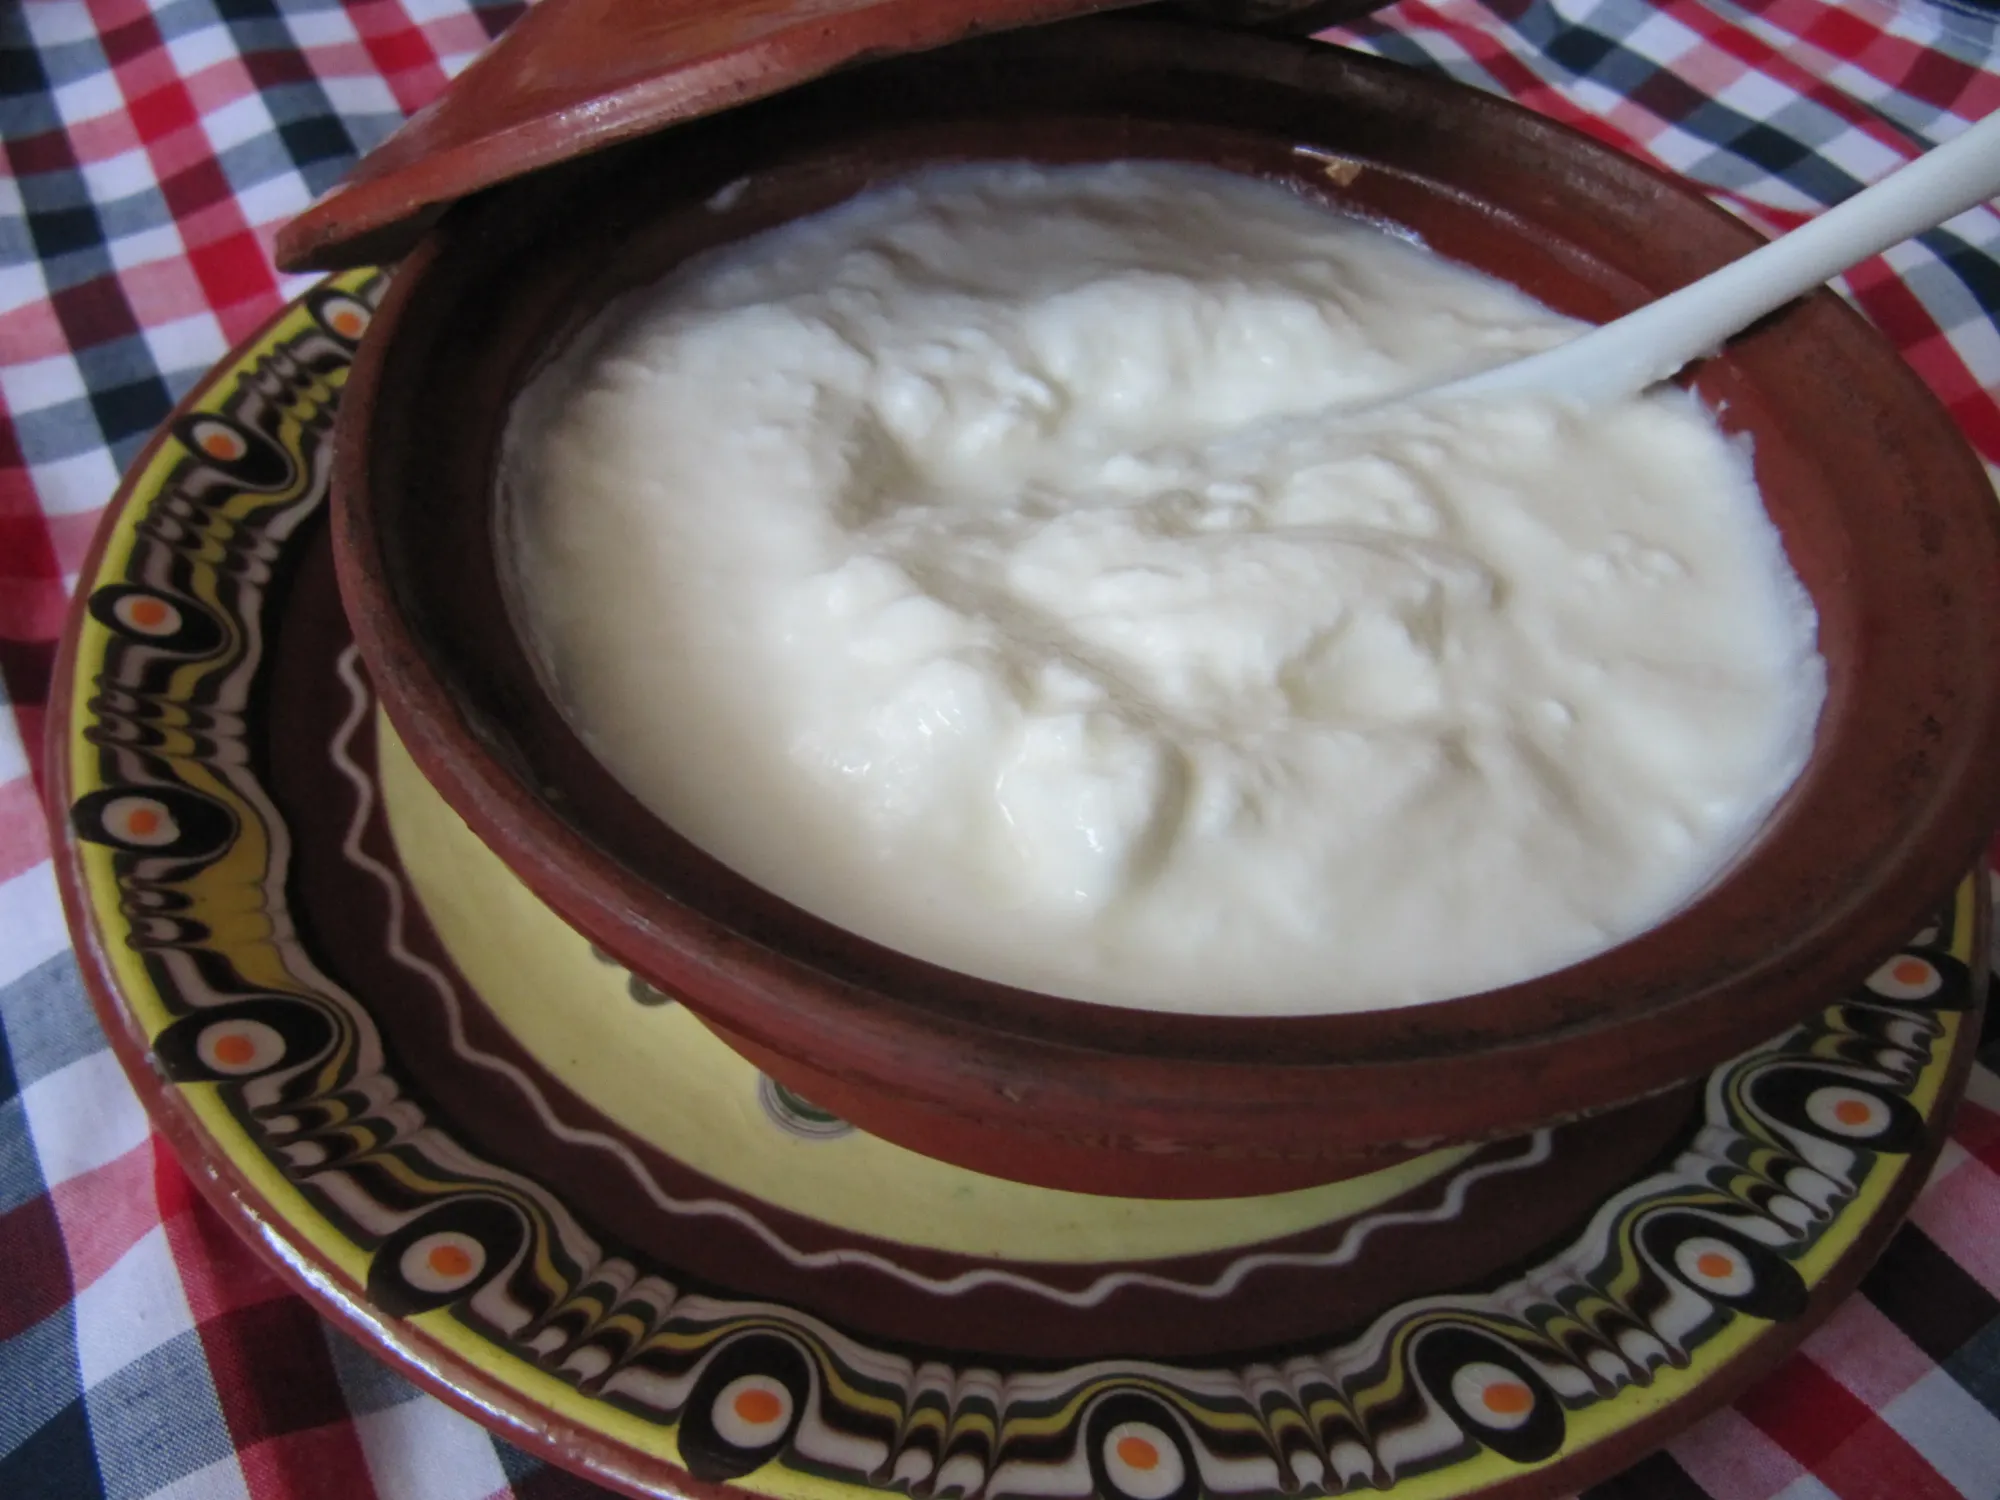 Natural yogurt is a source of probiotics